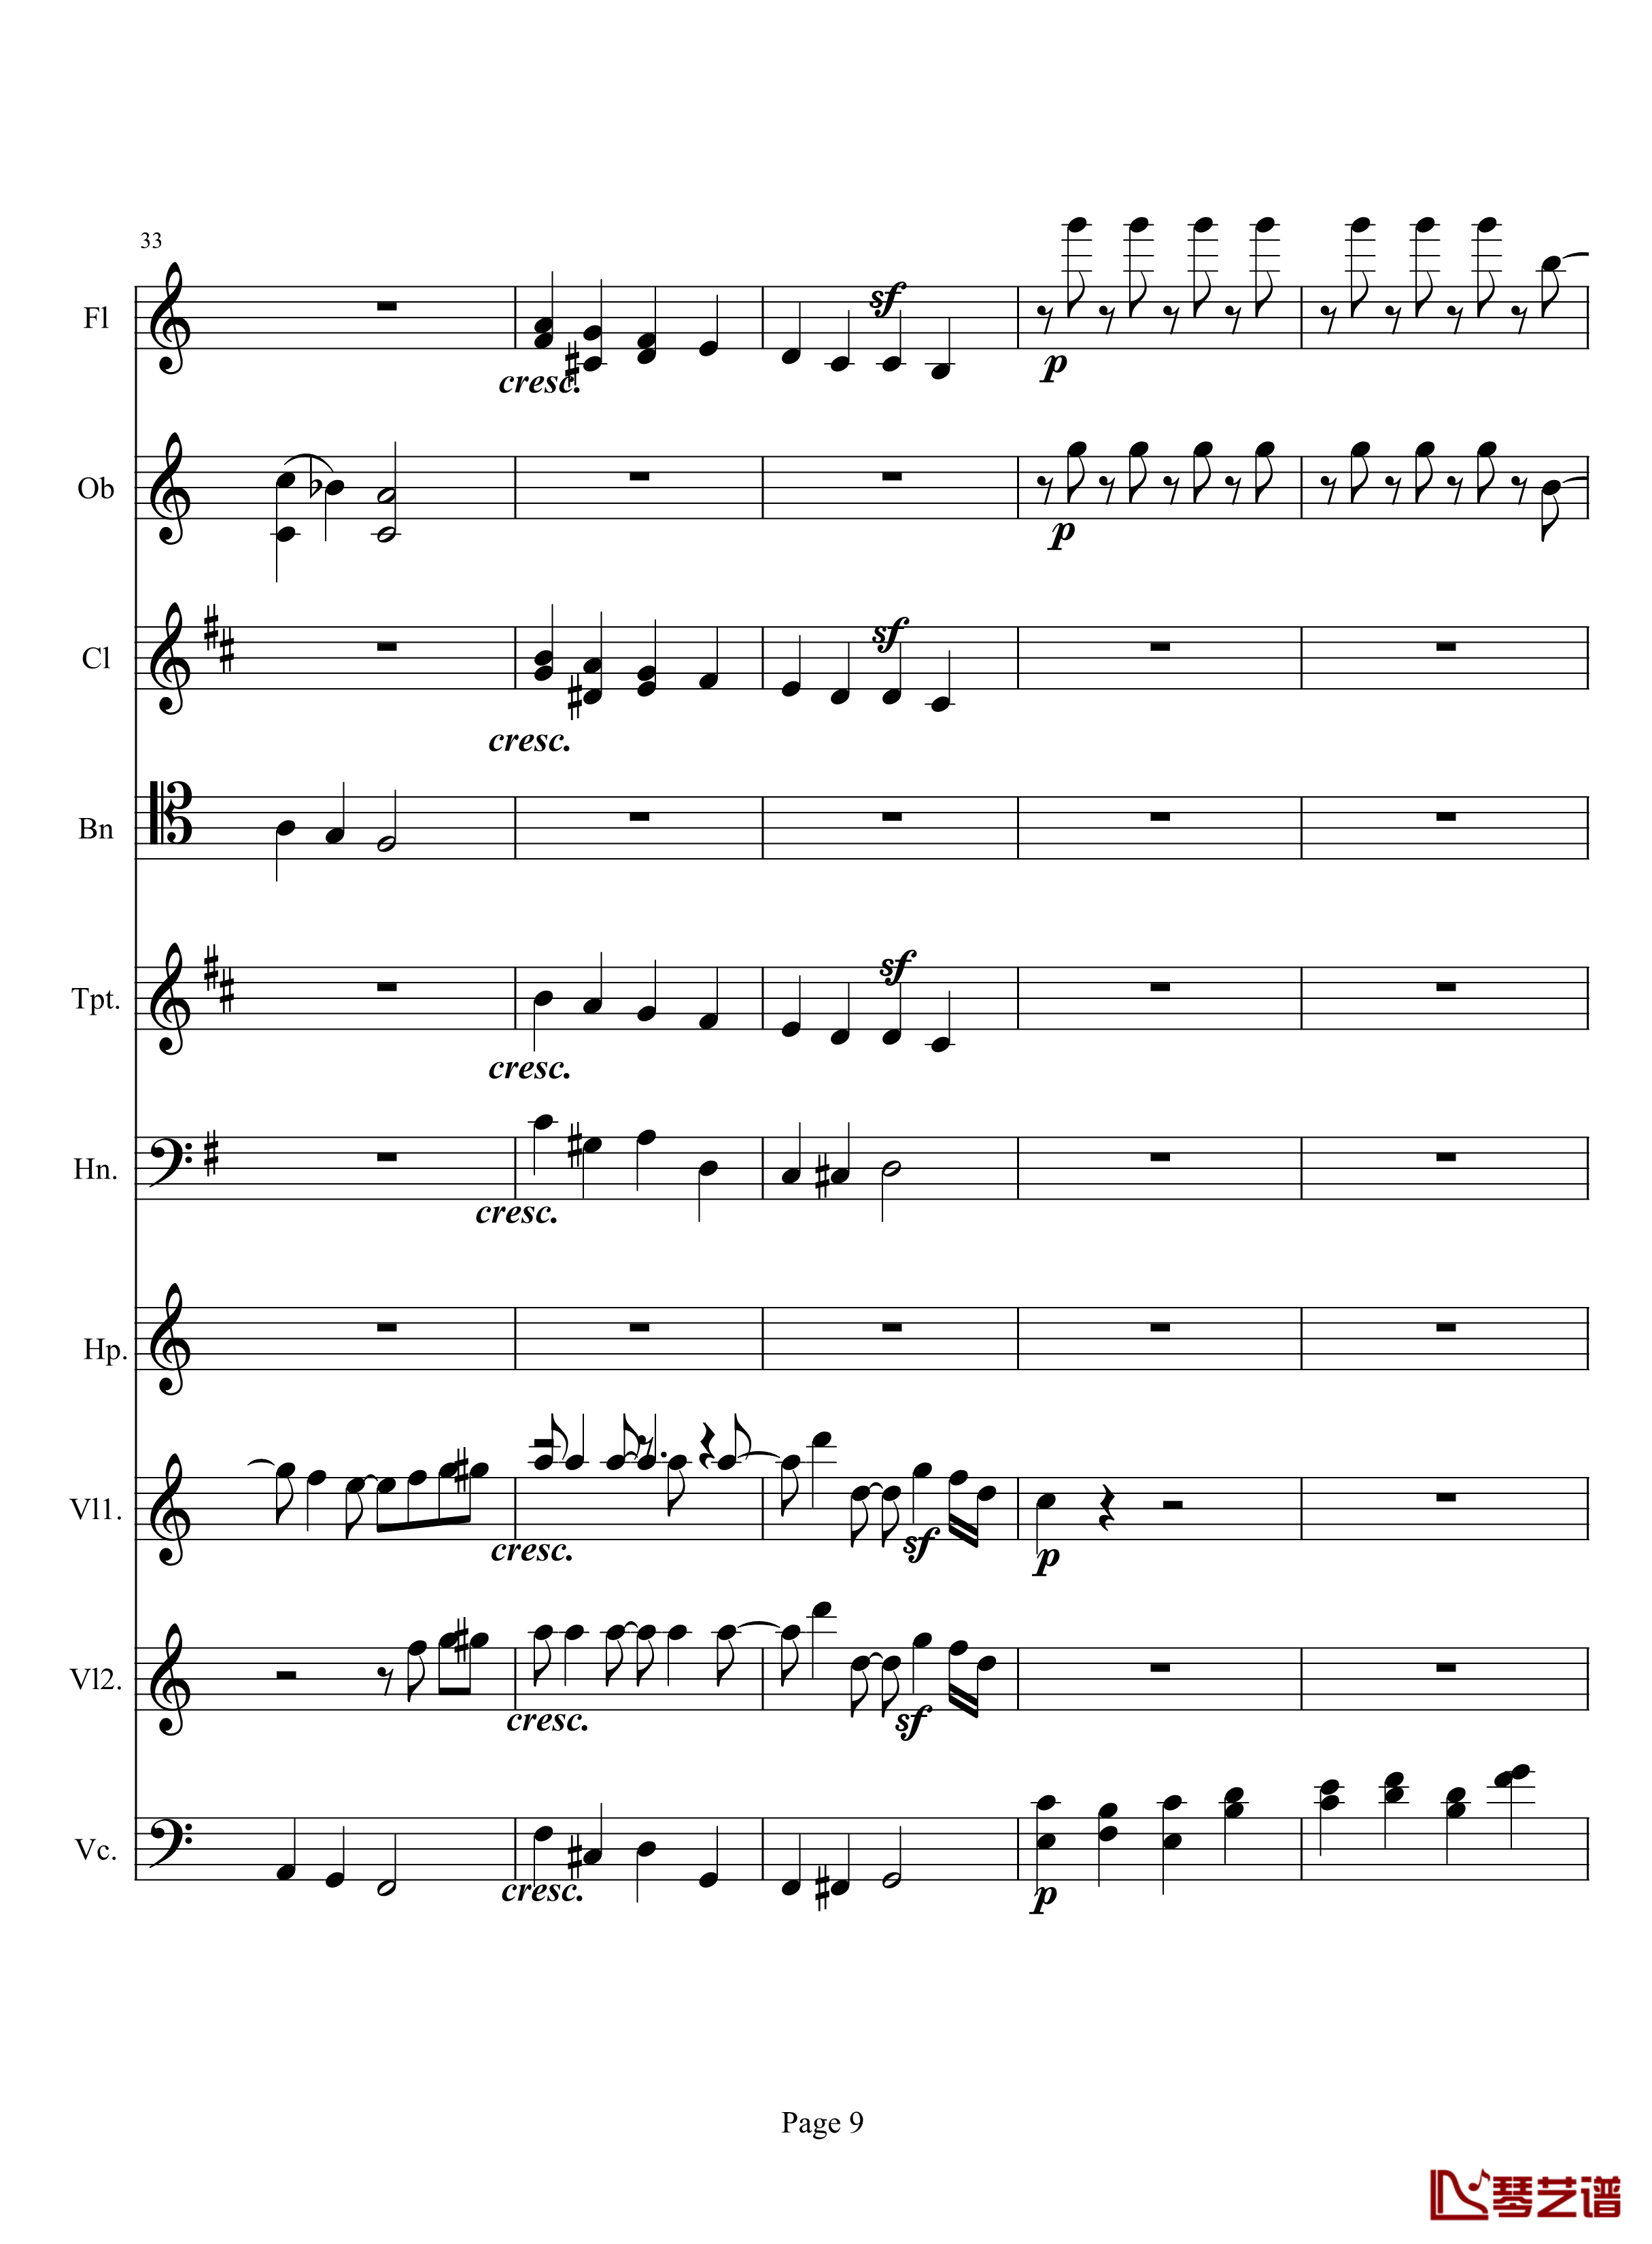 奏鸣曲之交响钢琴谱-第10首-2-贝多芬-beethoven9